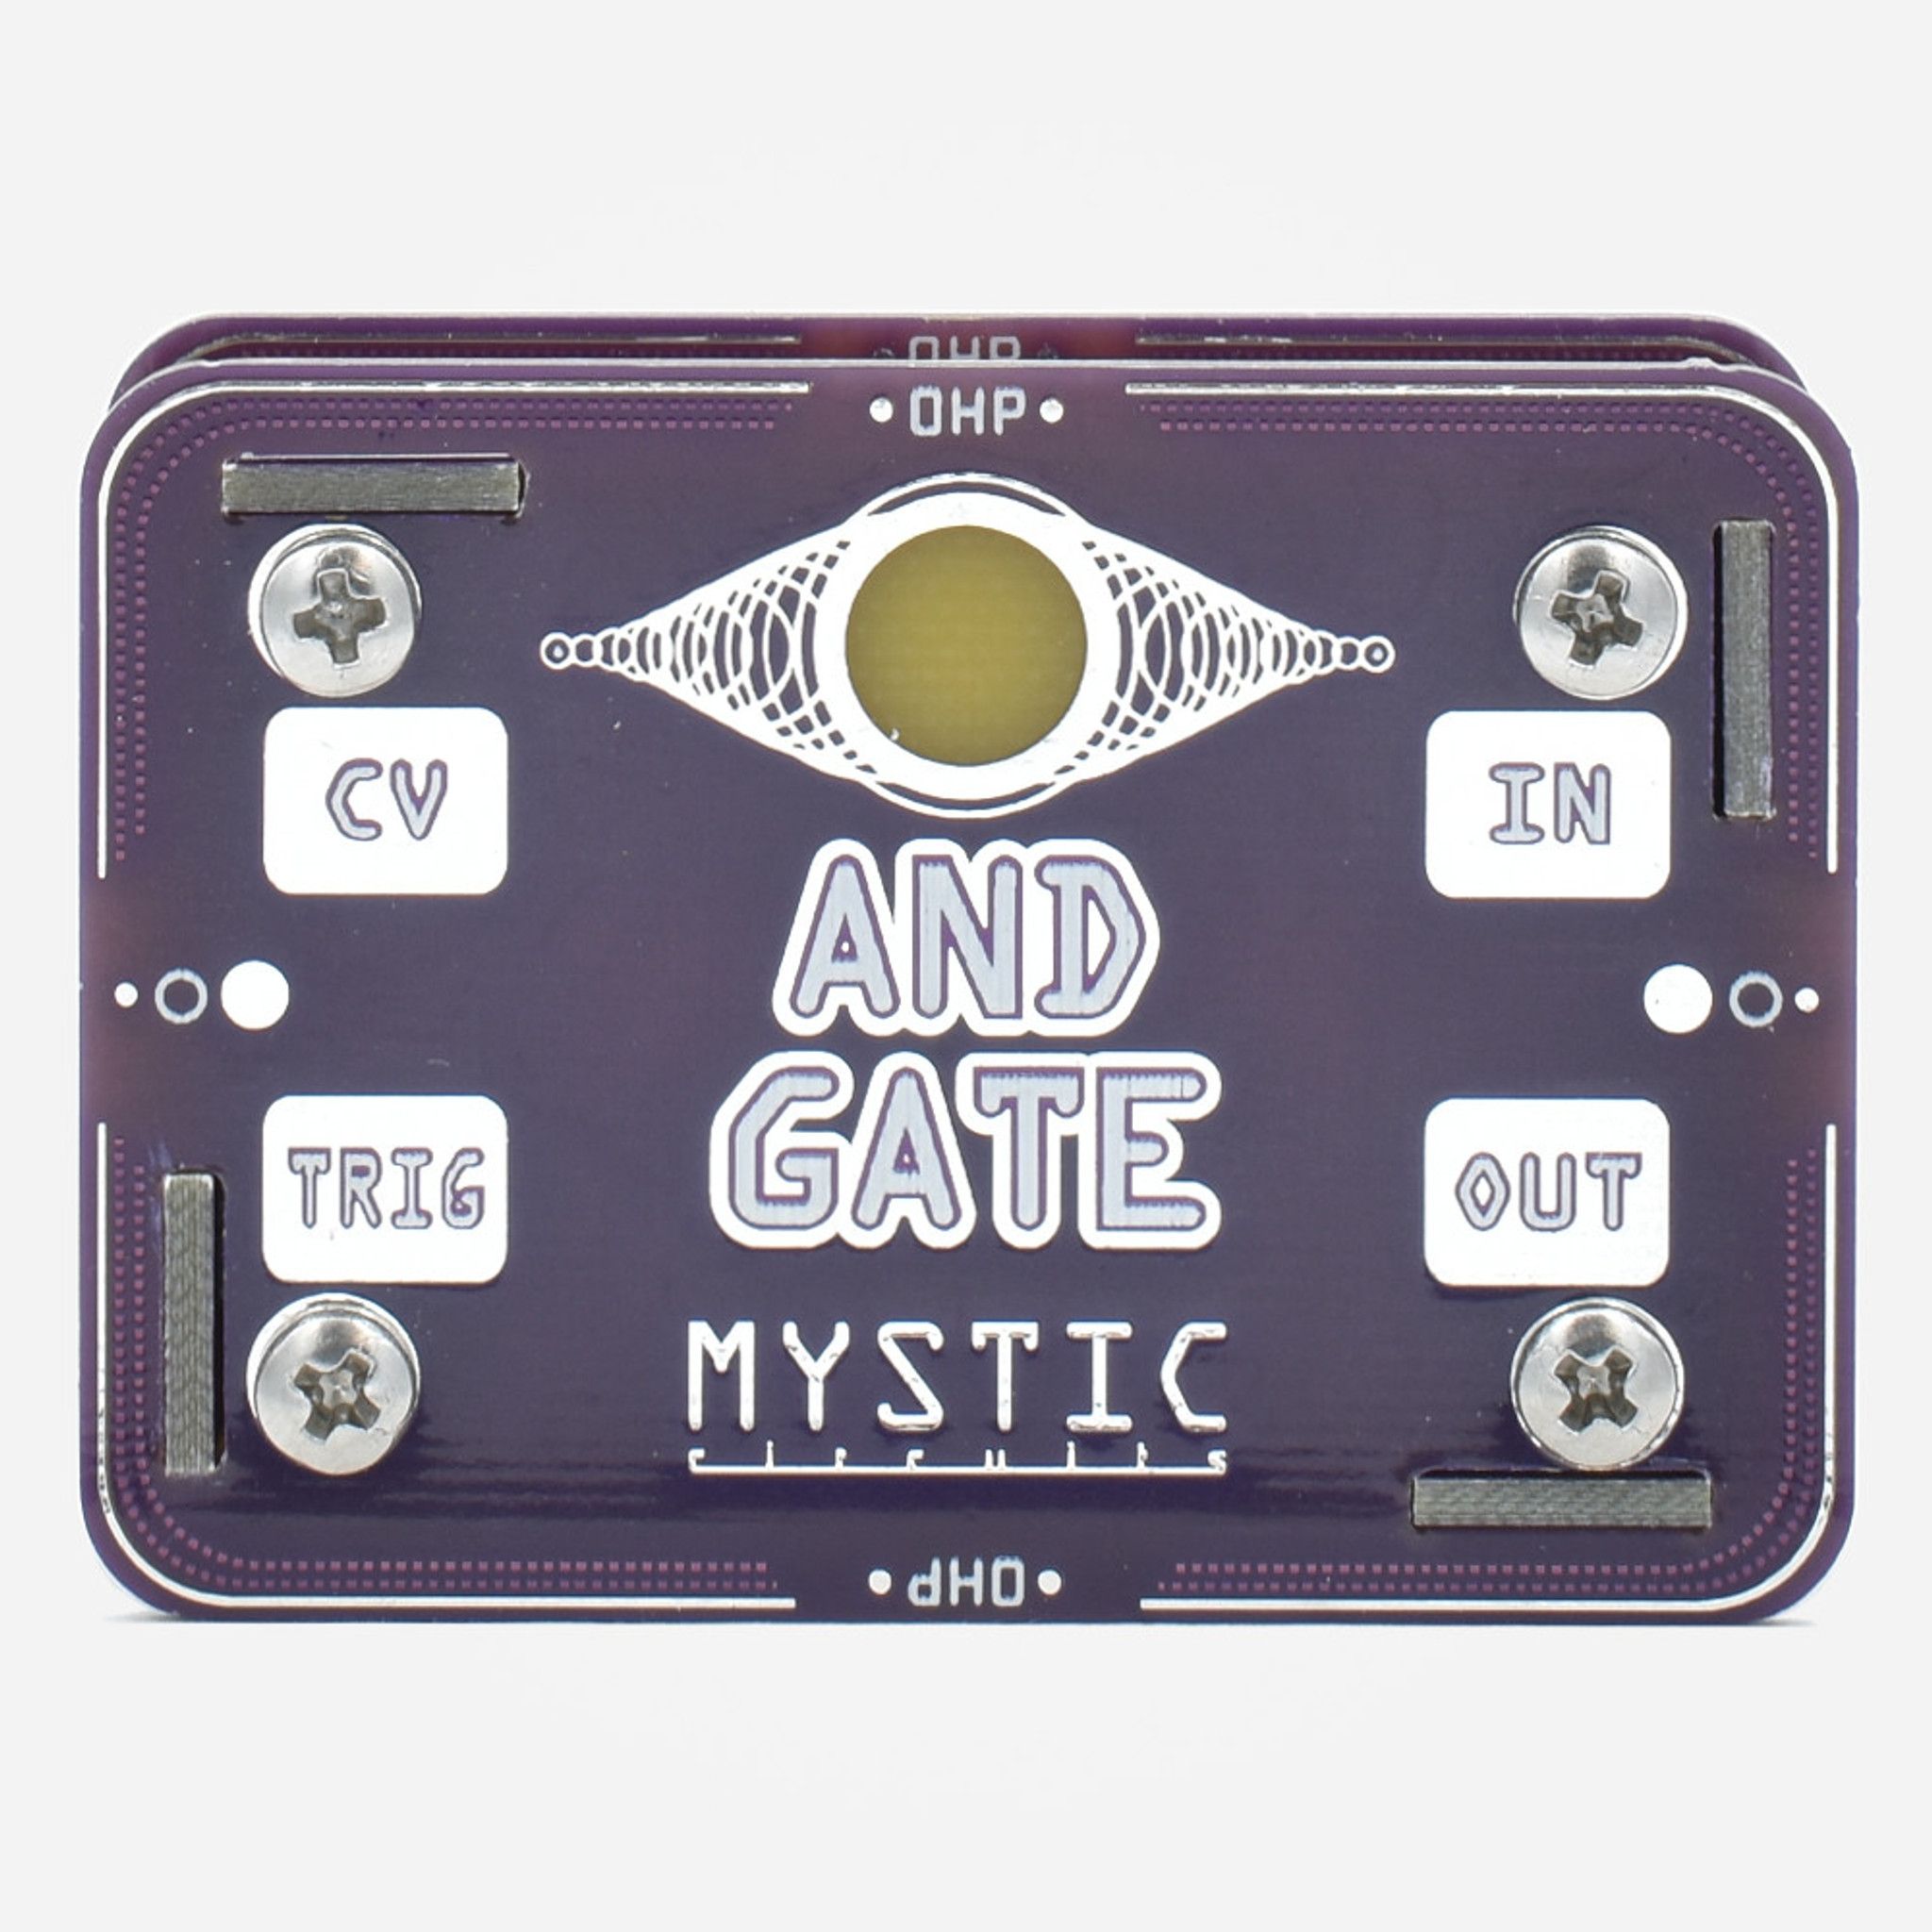 0HP - AND Logic Gate